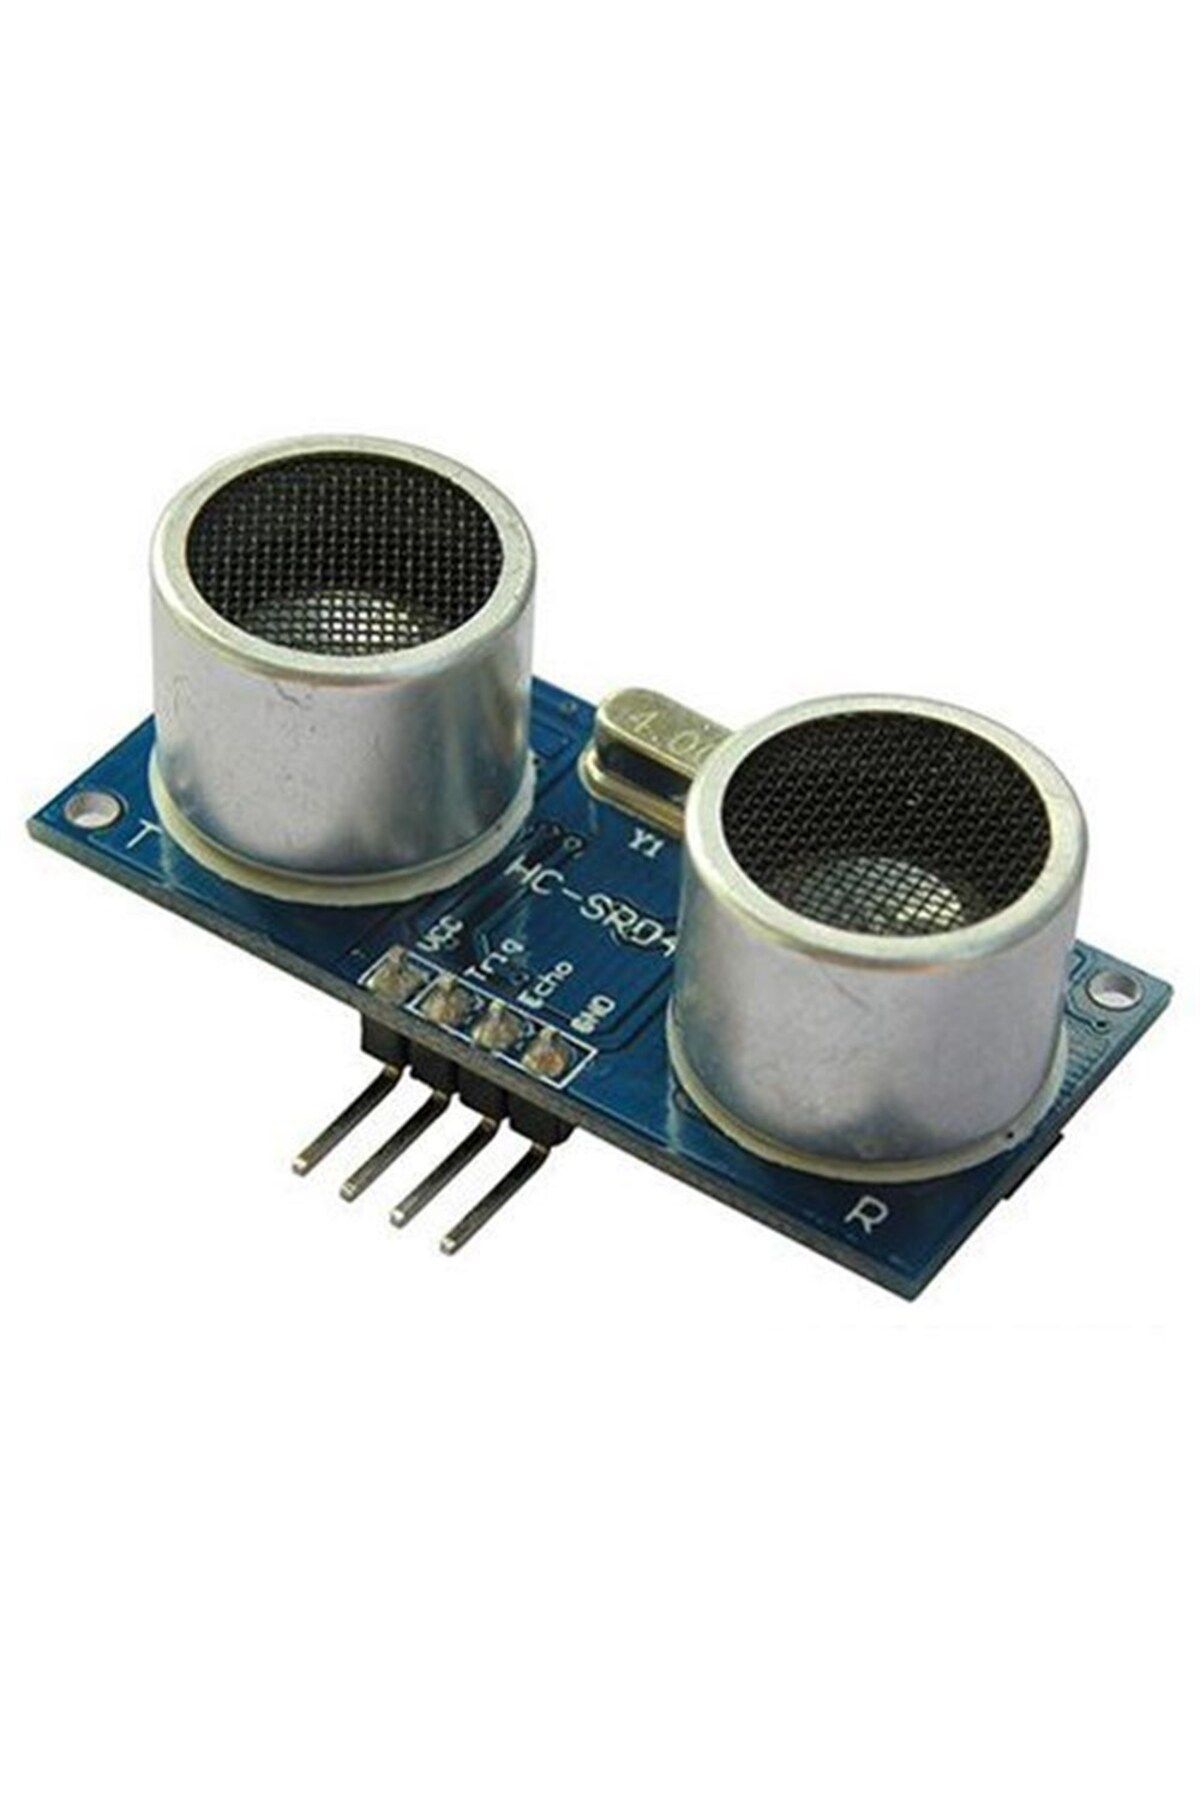 Genel Markalar Hc-sr04 Ultrasonik Mesafe Sensörü